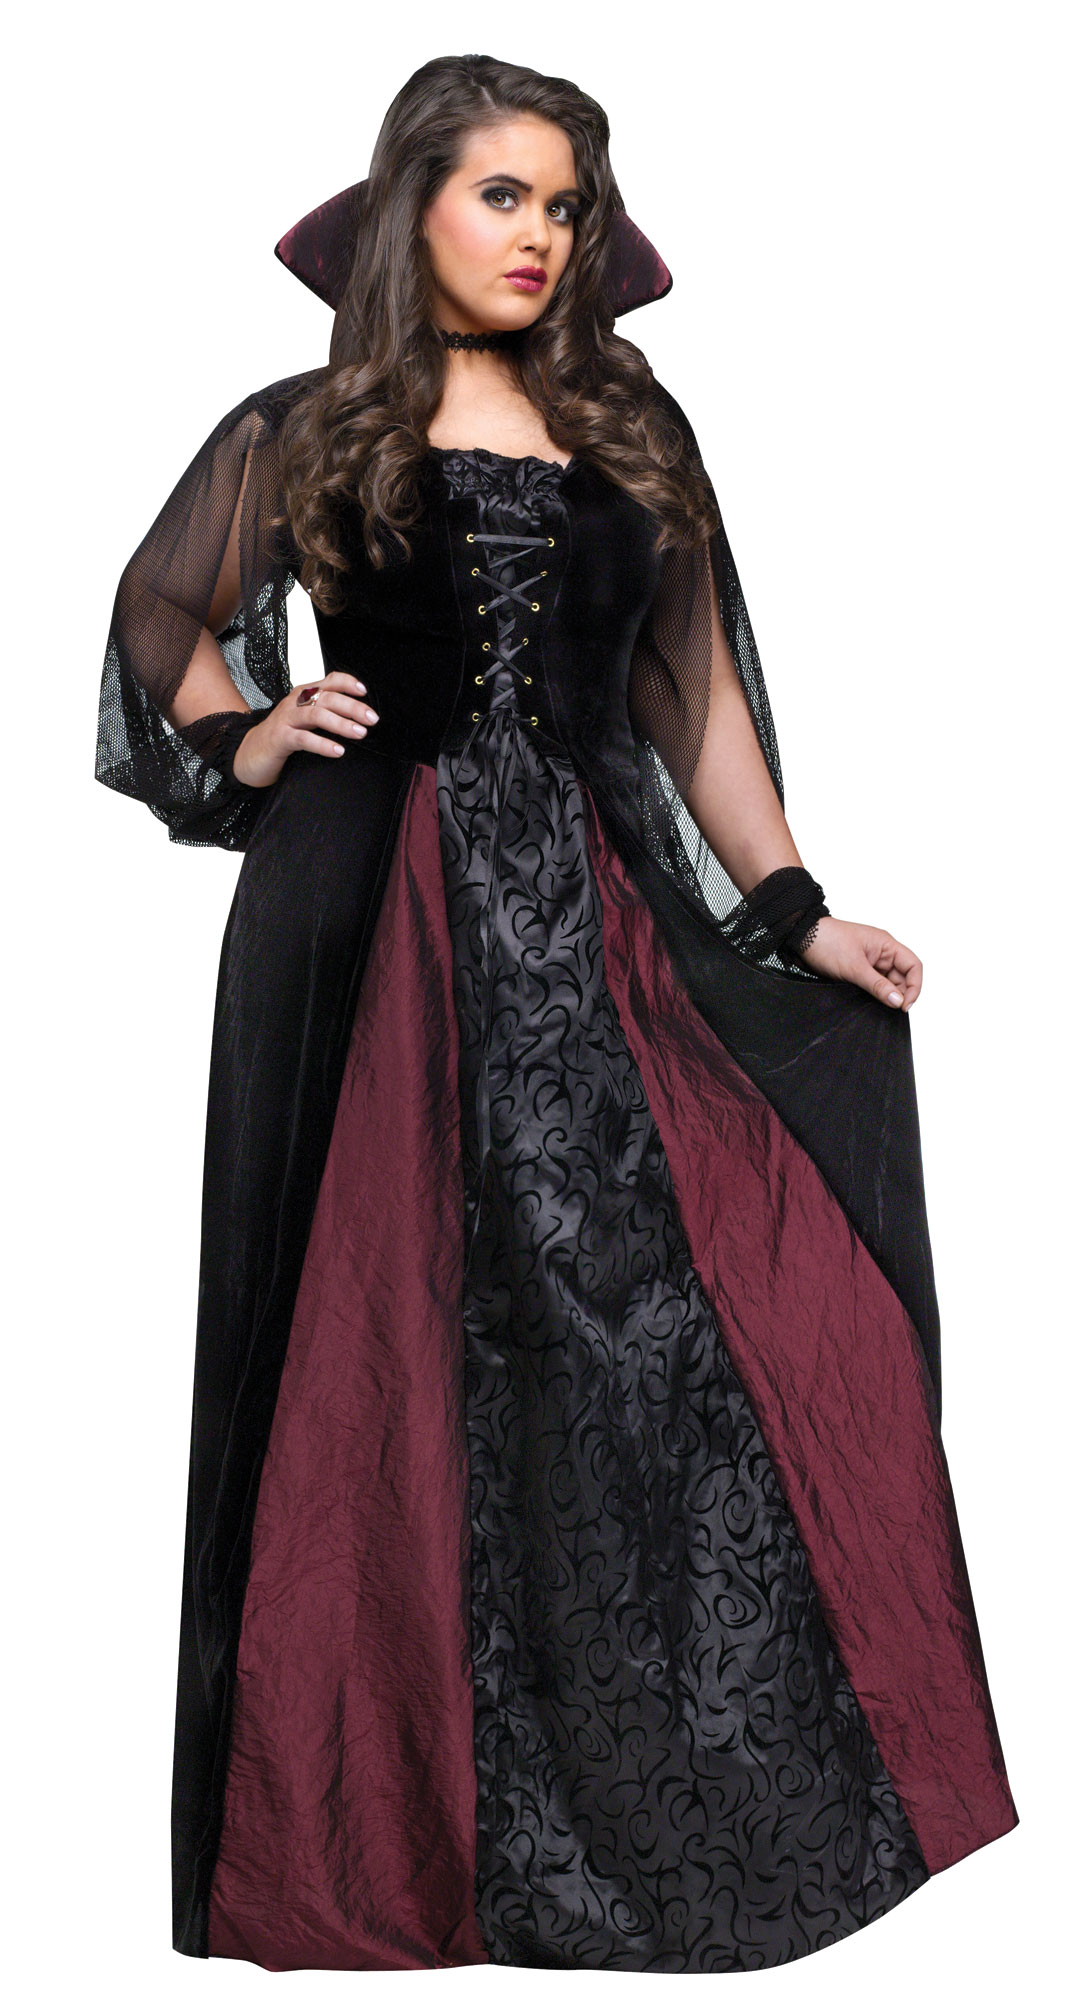 Goth Maiden Vampiress 4491